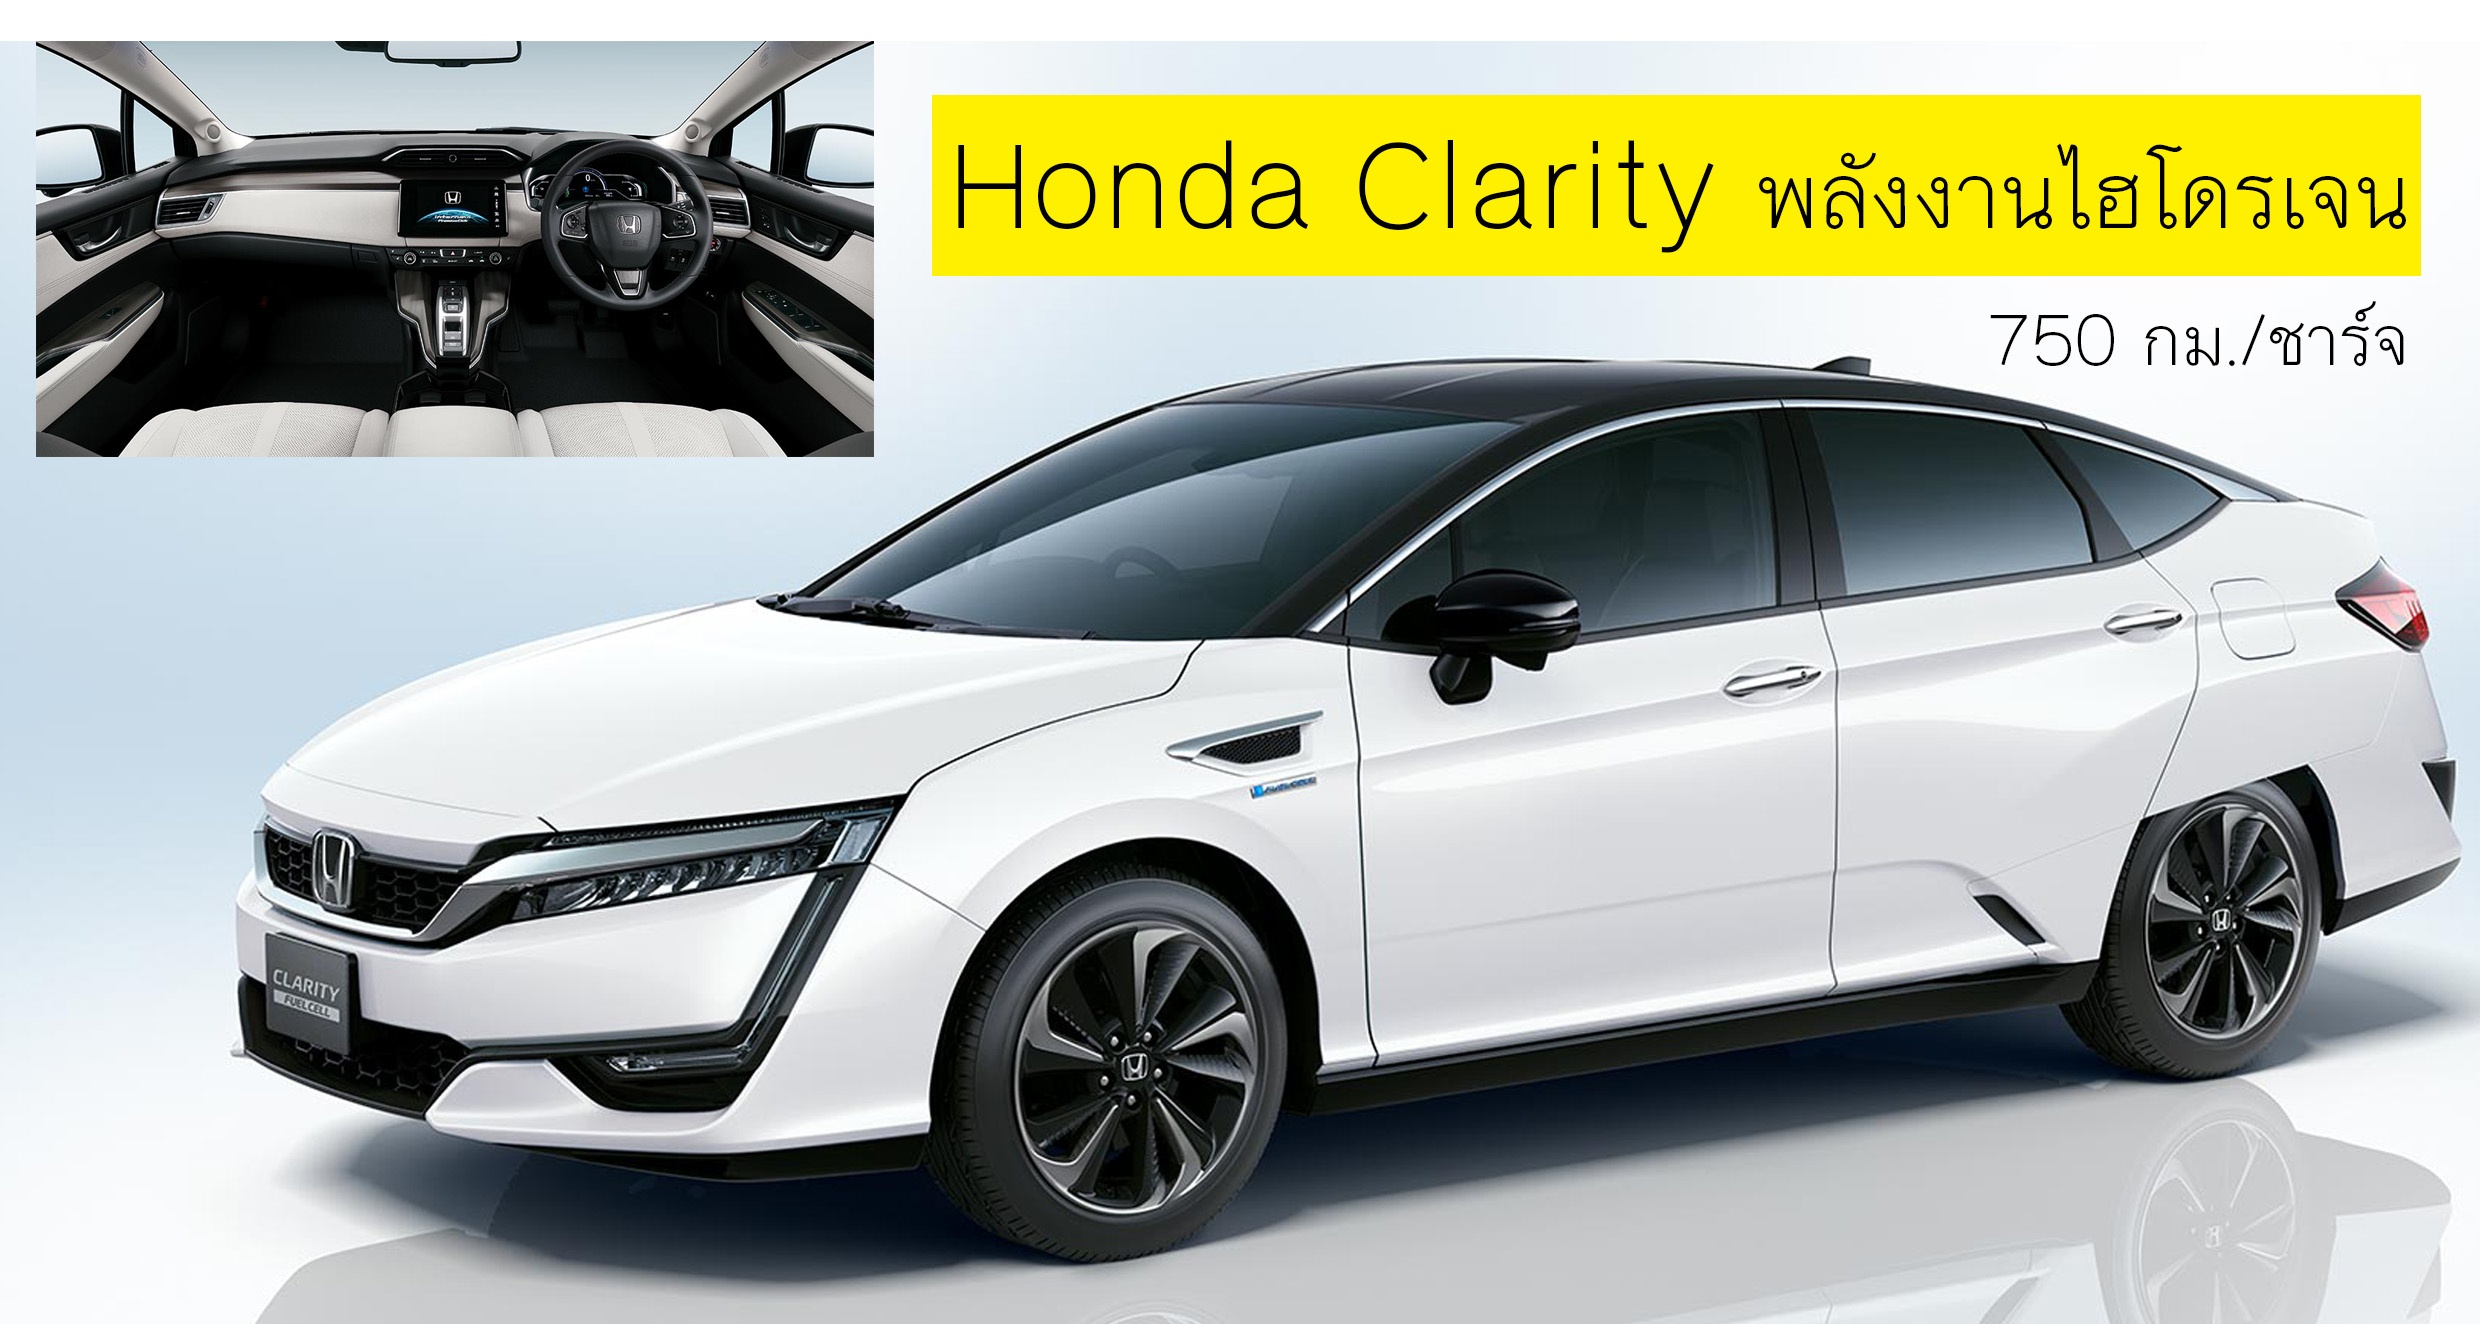 Honda Clarity Fuel Cell ขายในญี่ปุ่น 2.15 ล้านบาท วิ่งได้ 750 กม./ชาร์จ